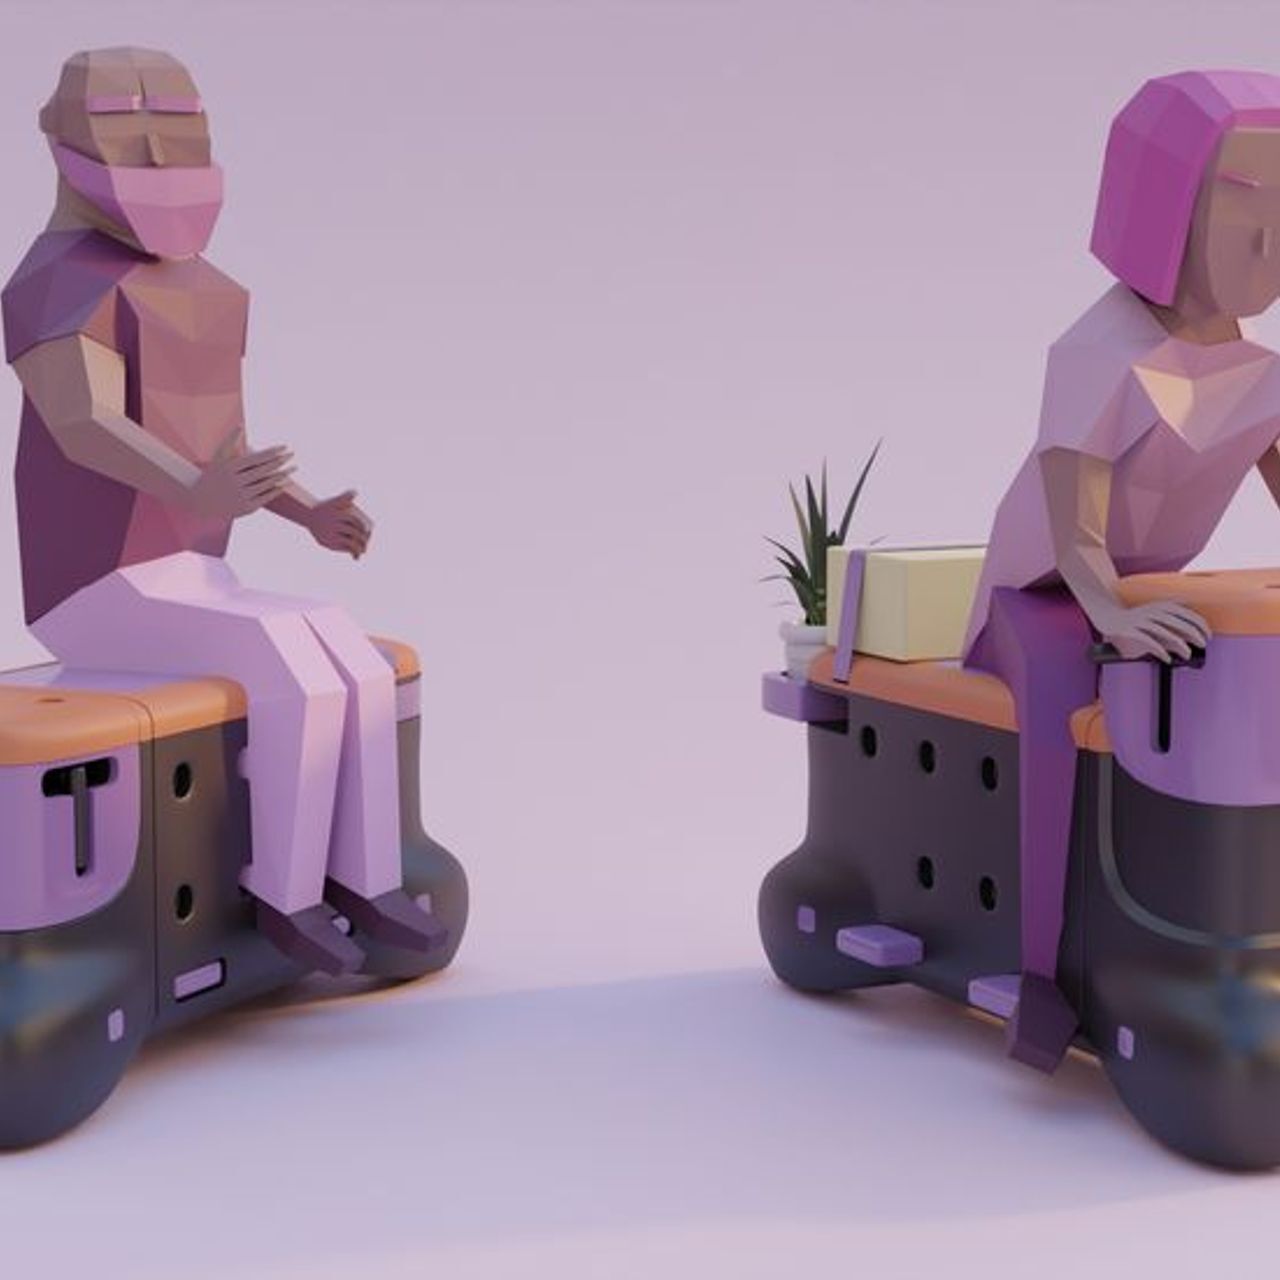 'TOD' adalah bangku skuter yang dibuat oleh mahasiswa desain Corentin Janel dan Guillaume Innocenti